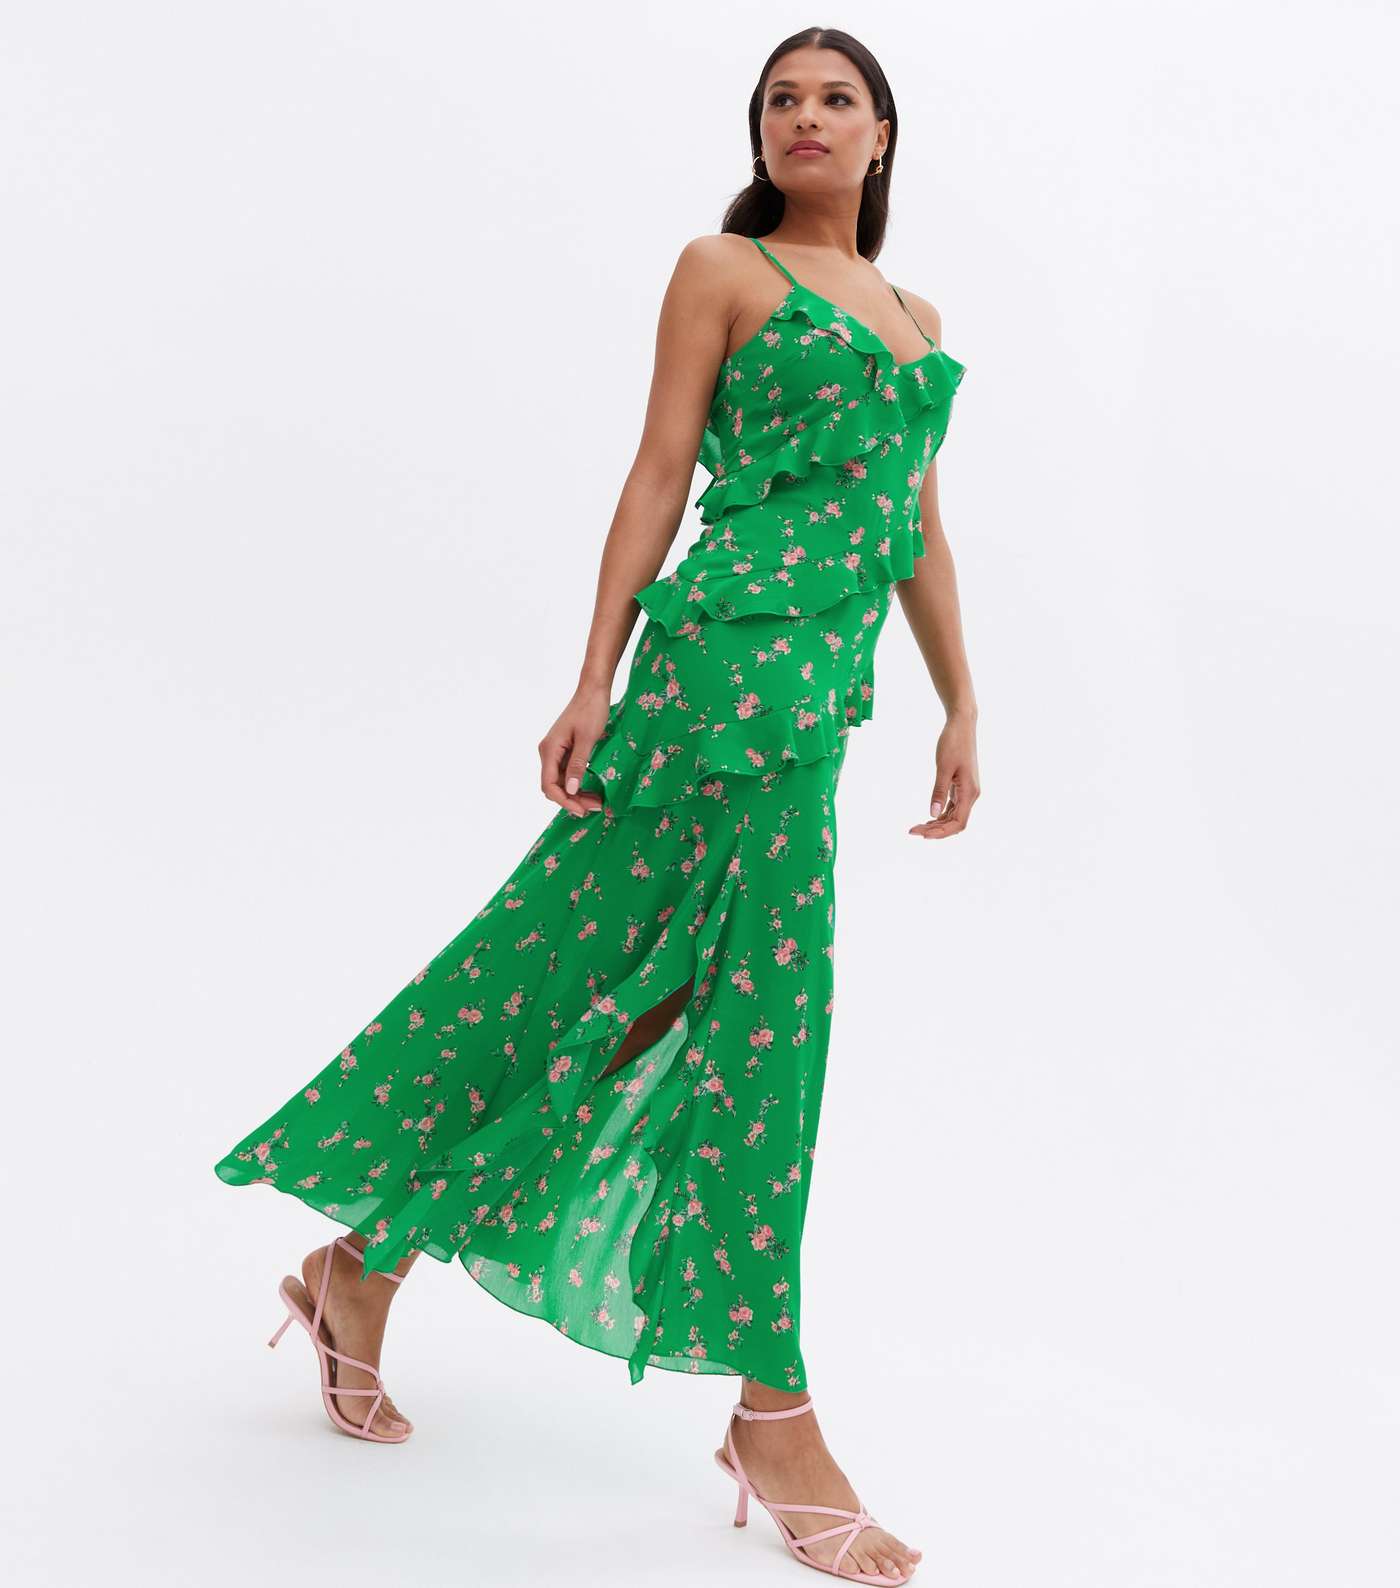 Green Rose Chiffon Ruffle Midi Dress Image 2